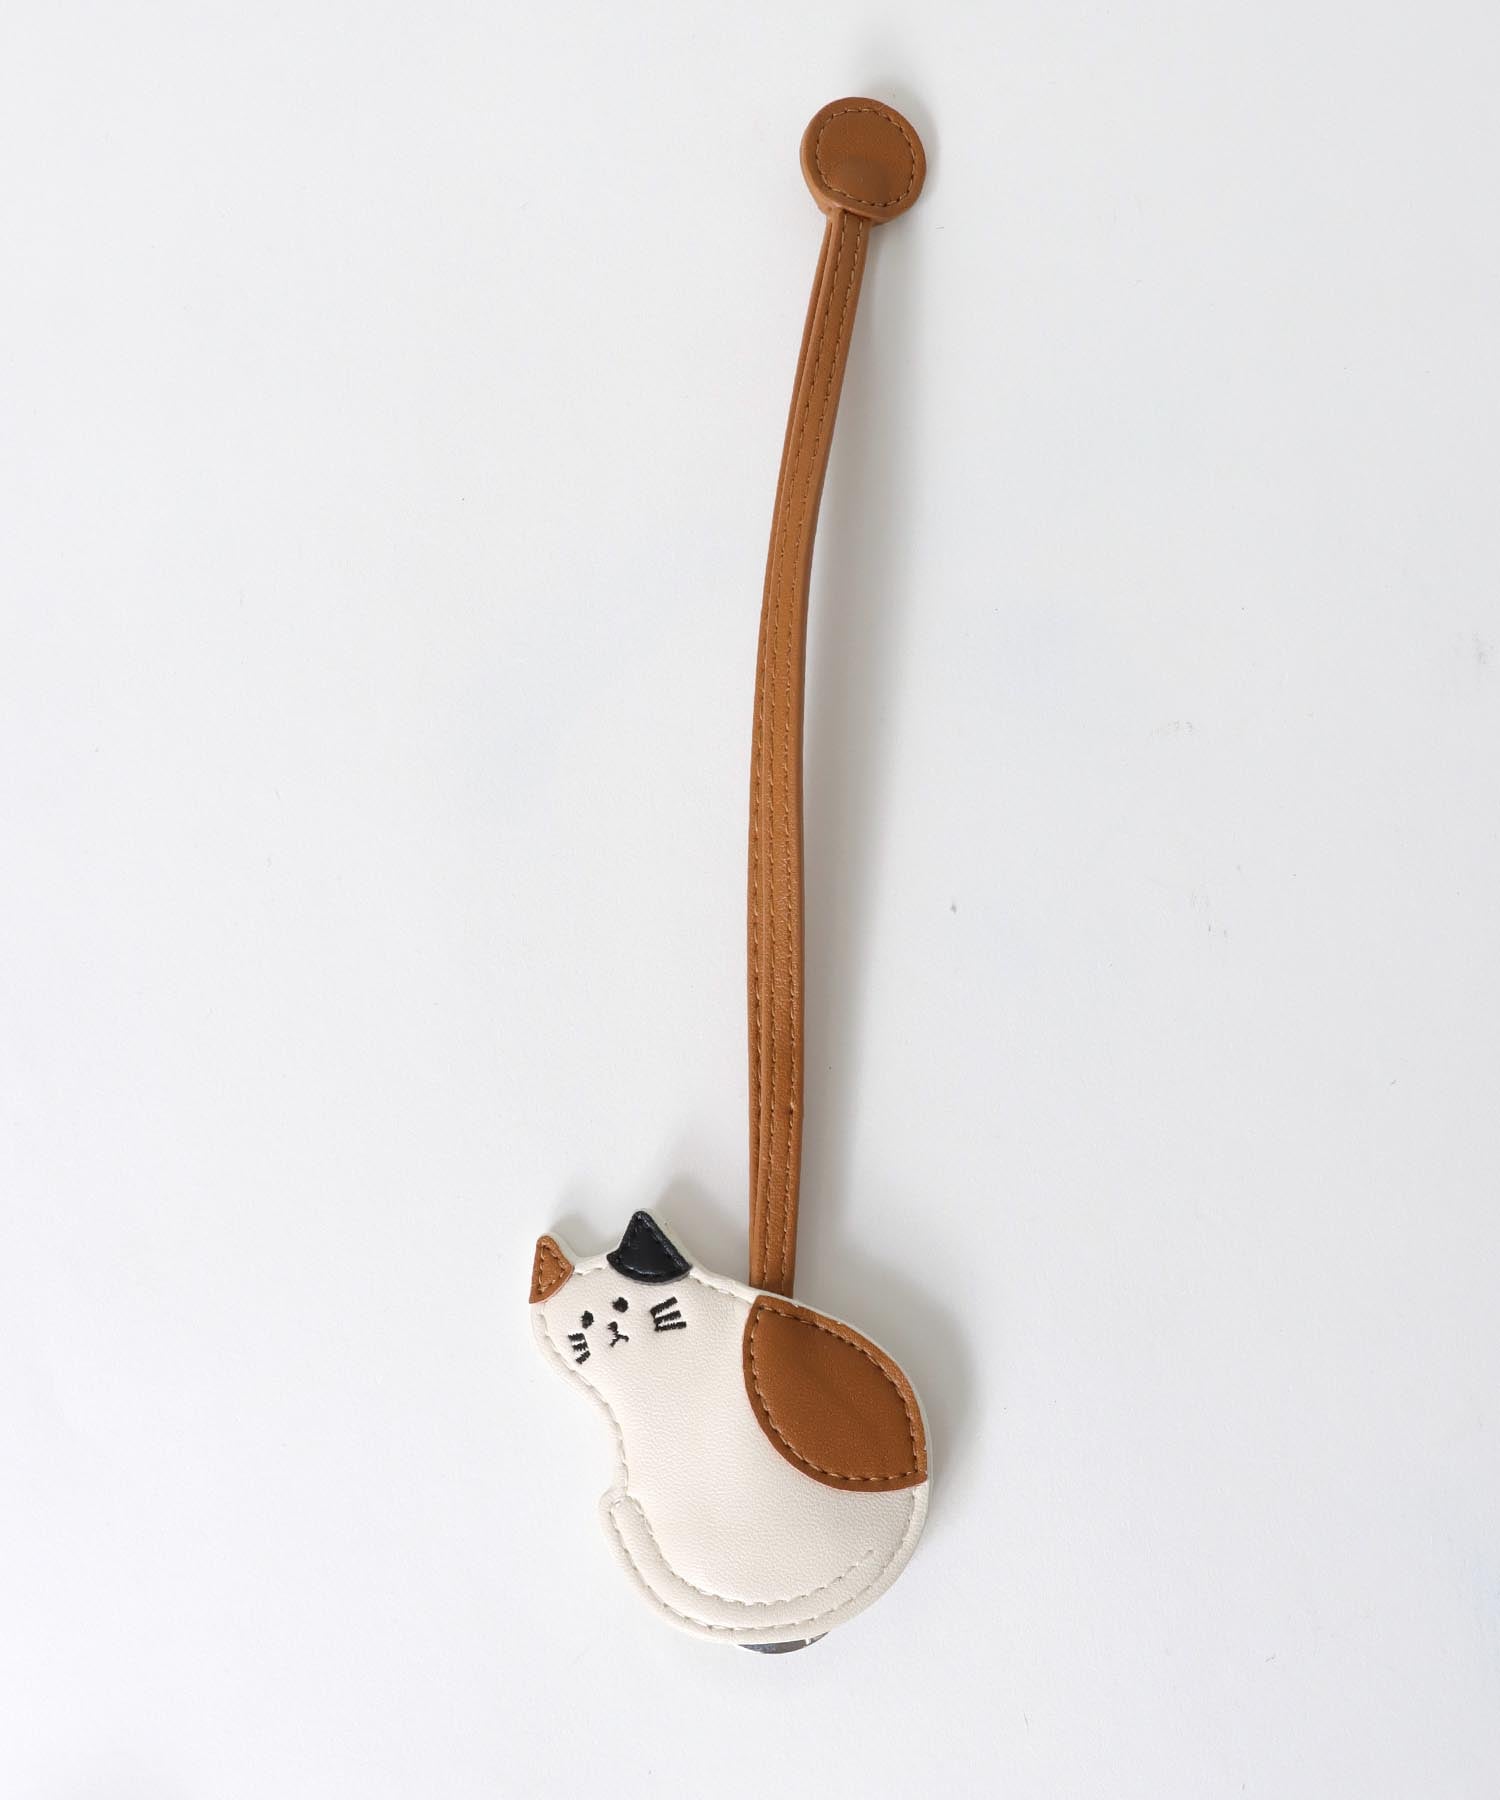 ふりむき猫ハングウォッチ(3気圧防水)